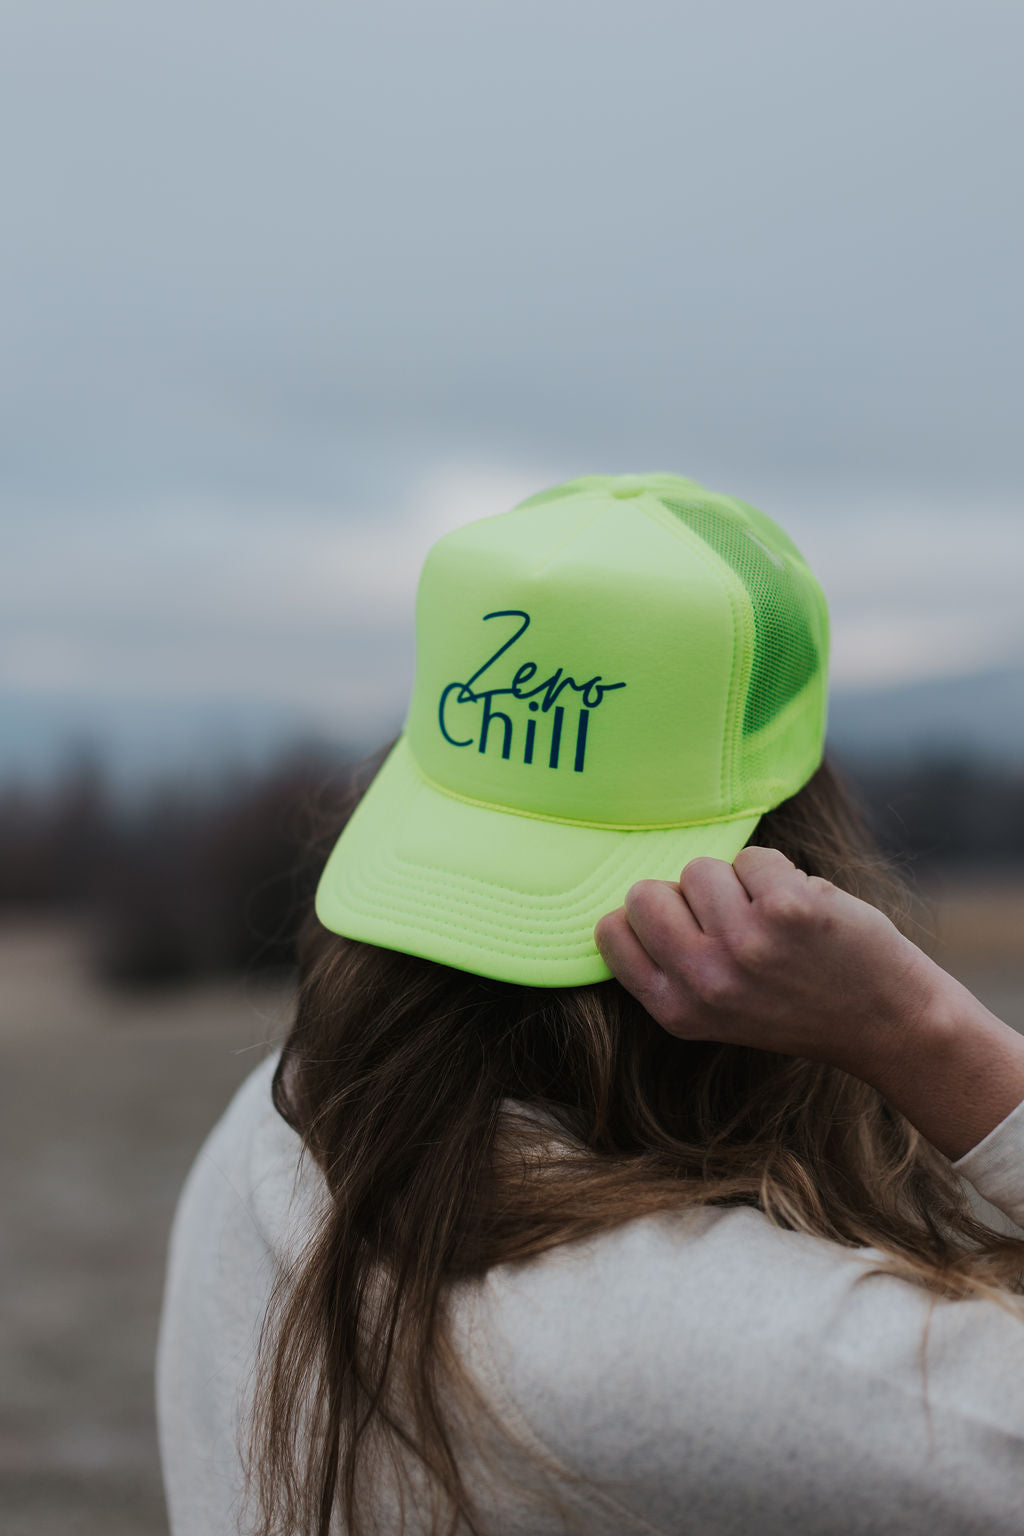 Zero Chill Trucker Hat-Neon Yellow